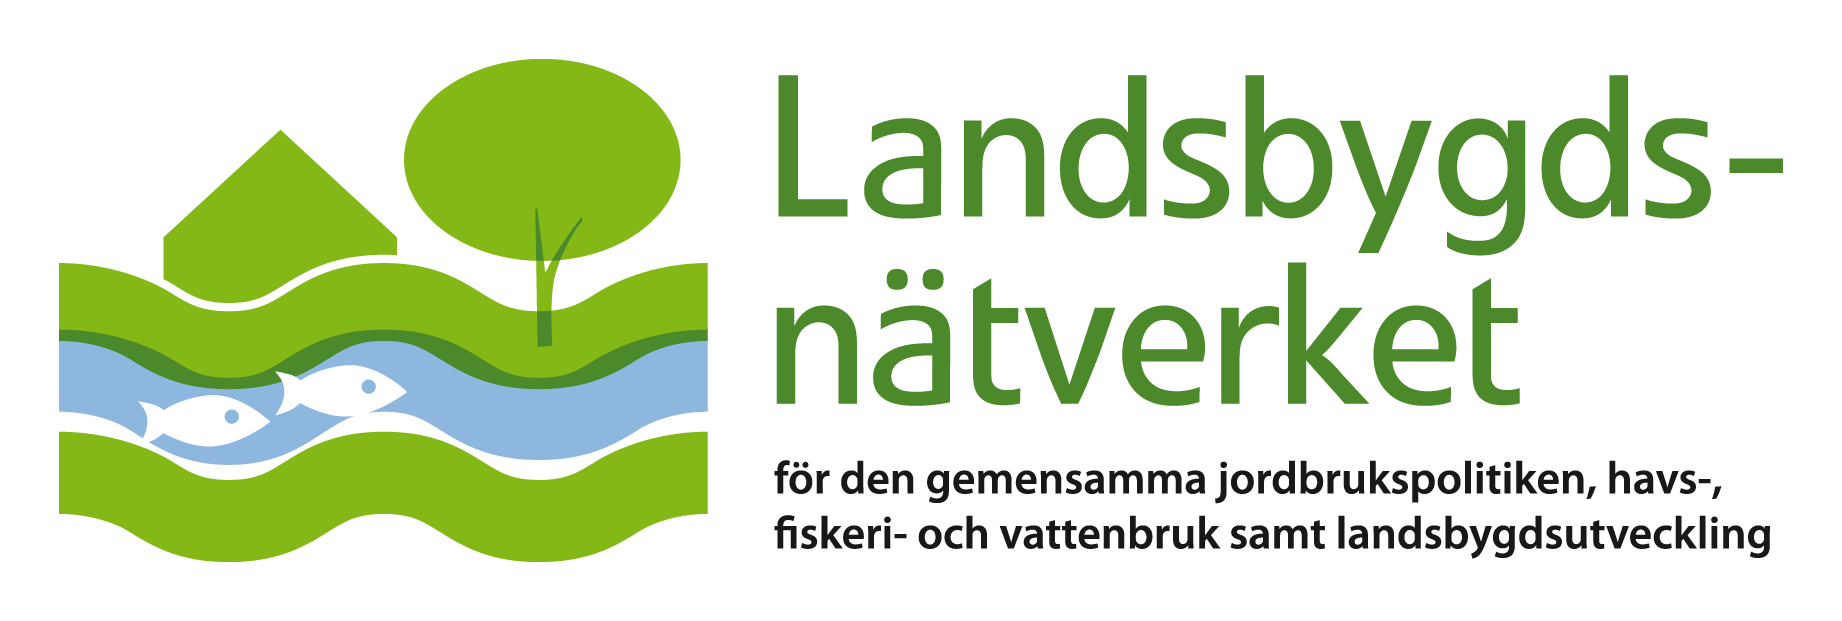 Logo för Landsbygdsnätverket. Bild.